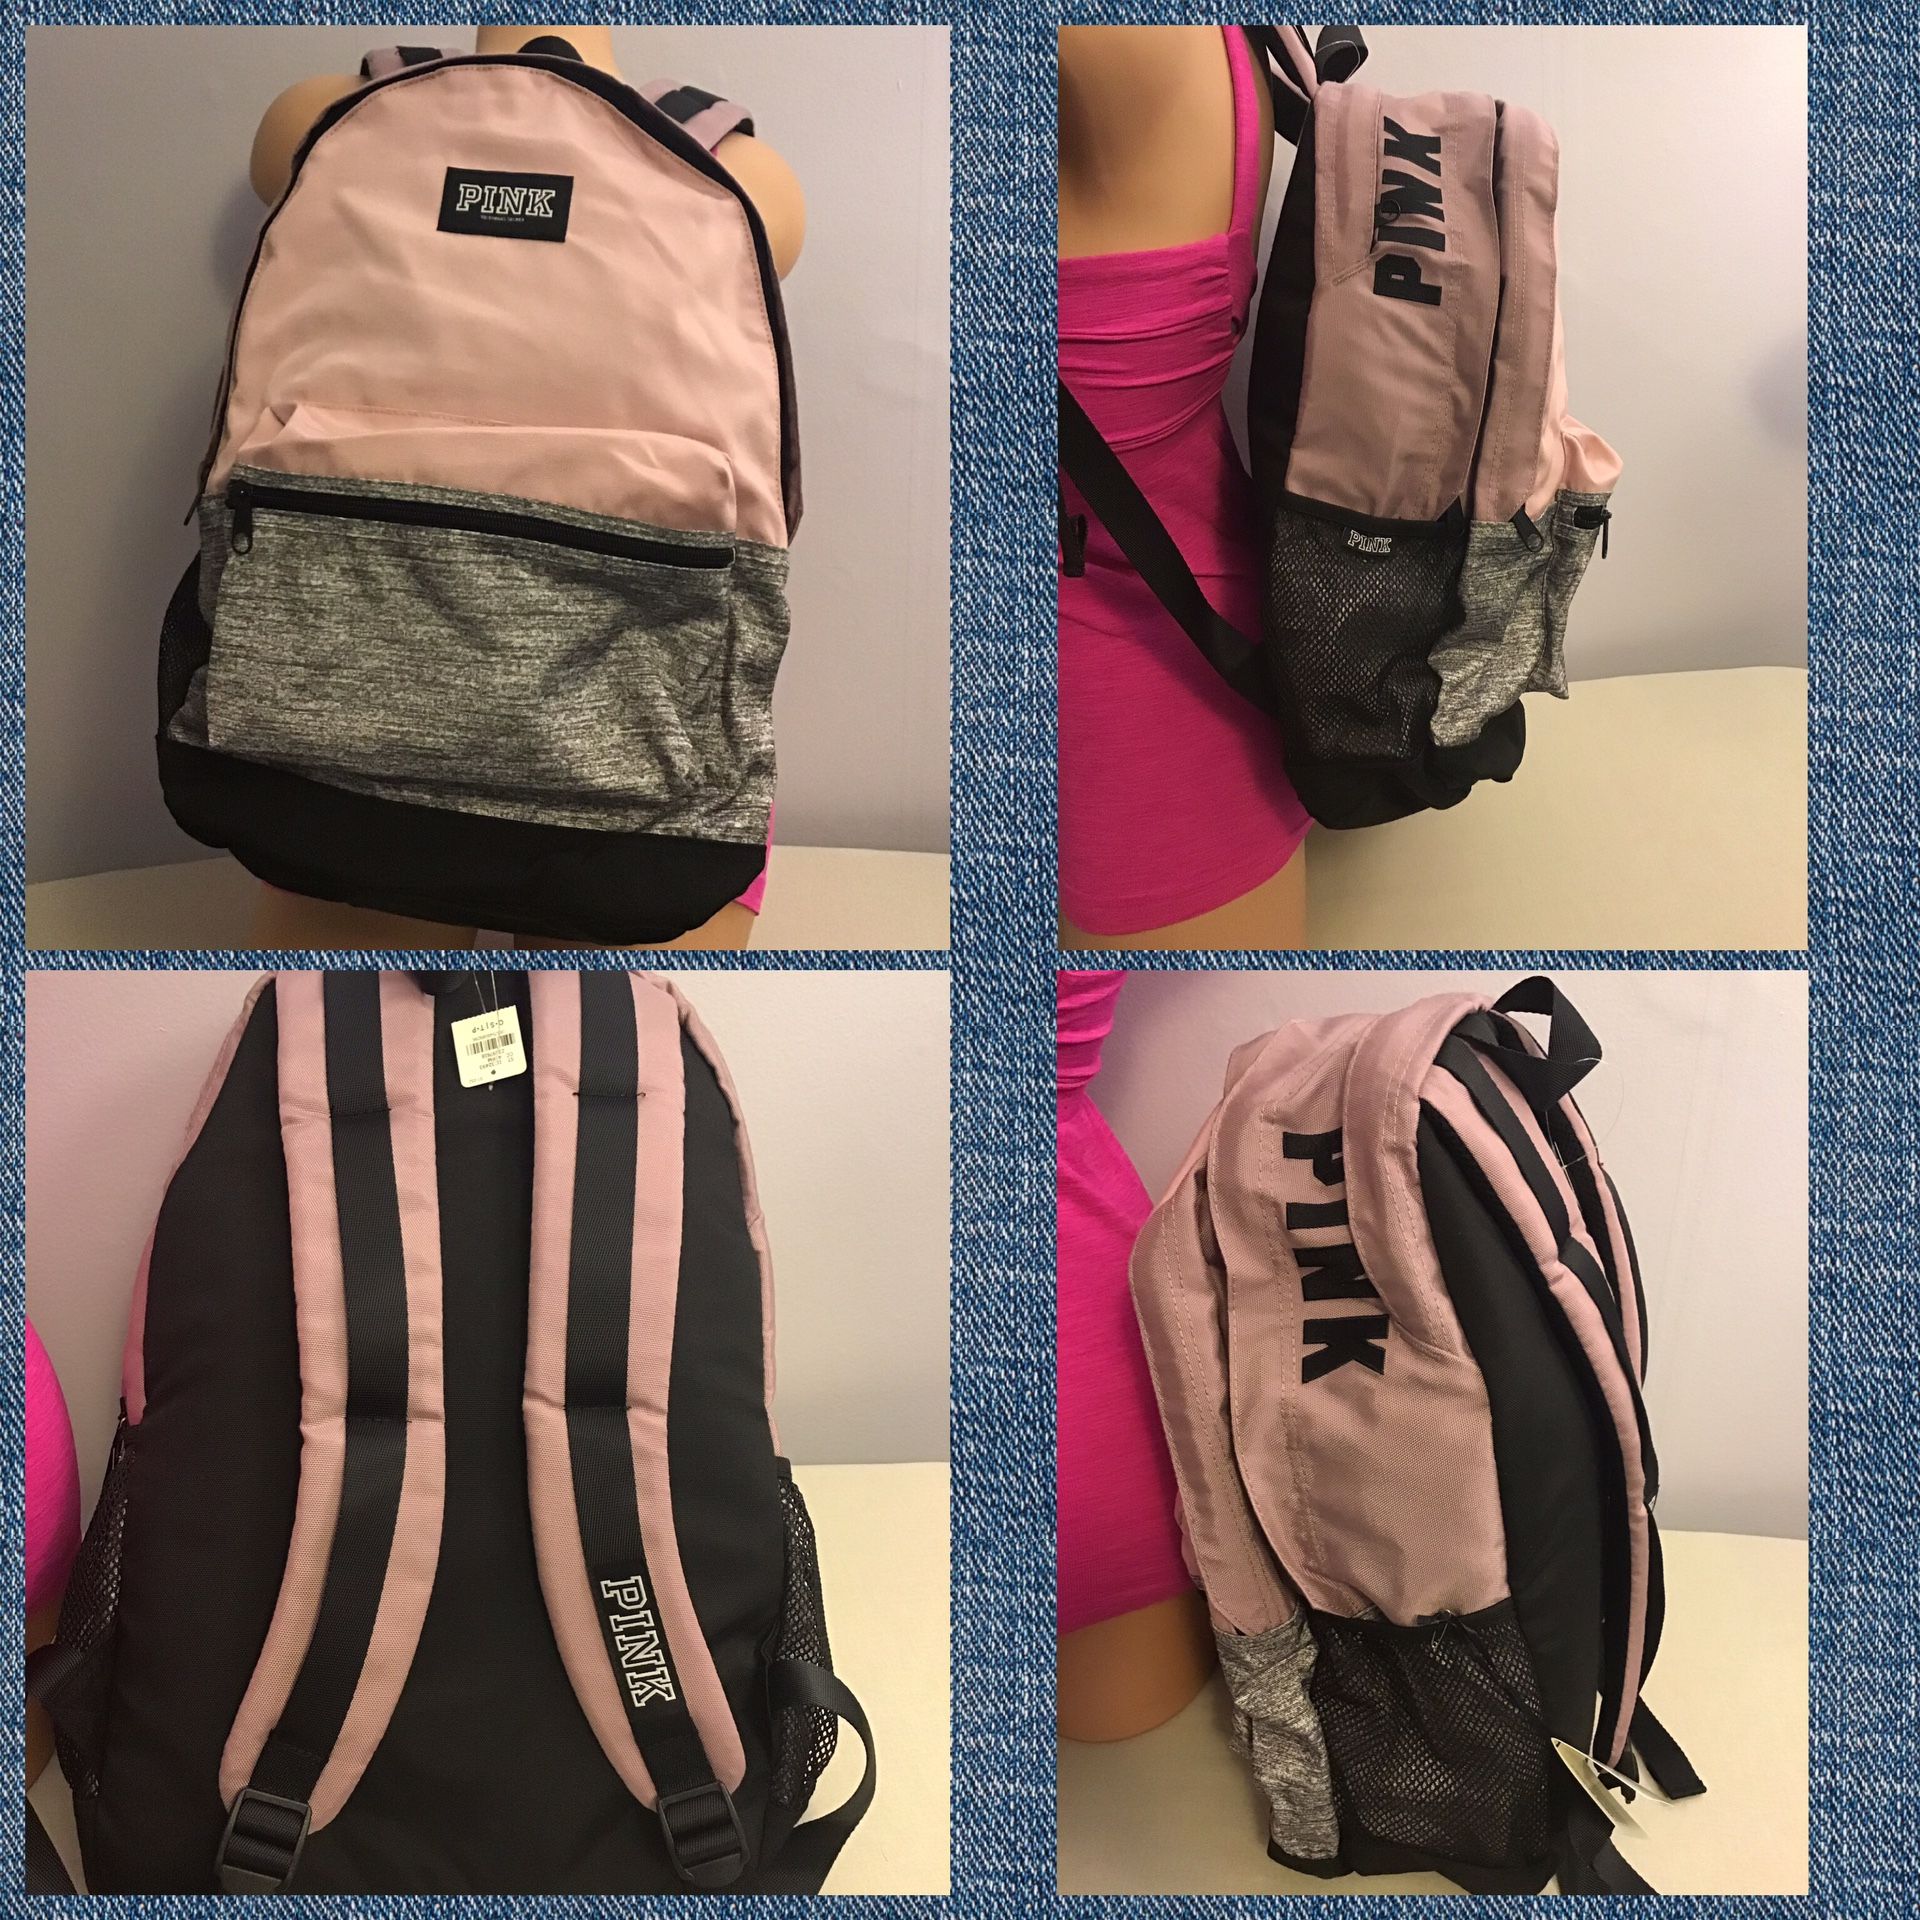 Victoria’s Secret vs pink grey black college bag backpack